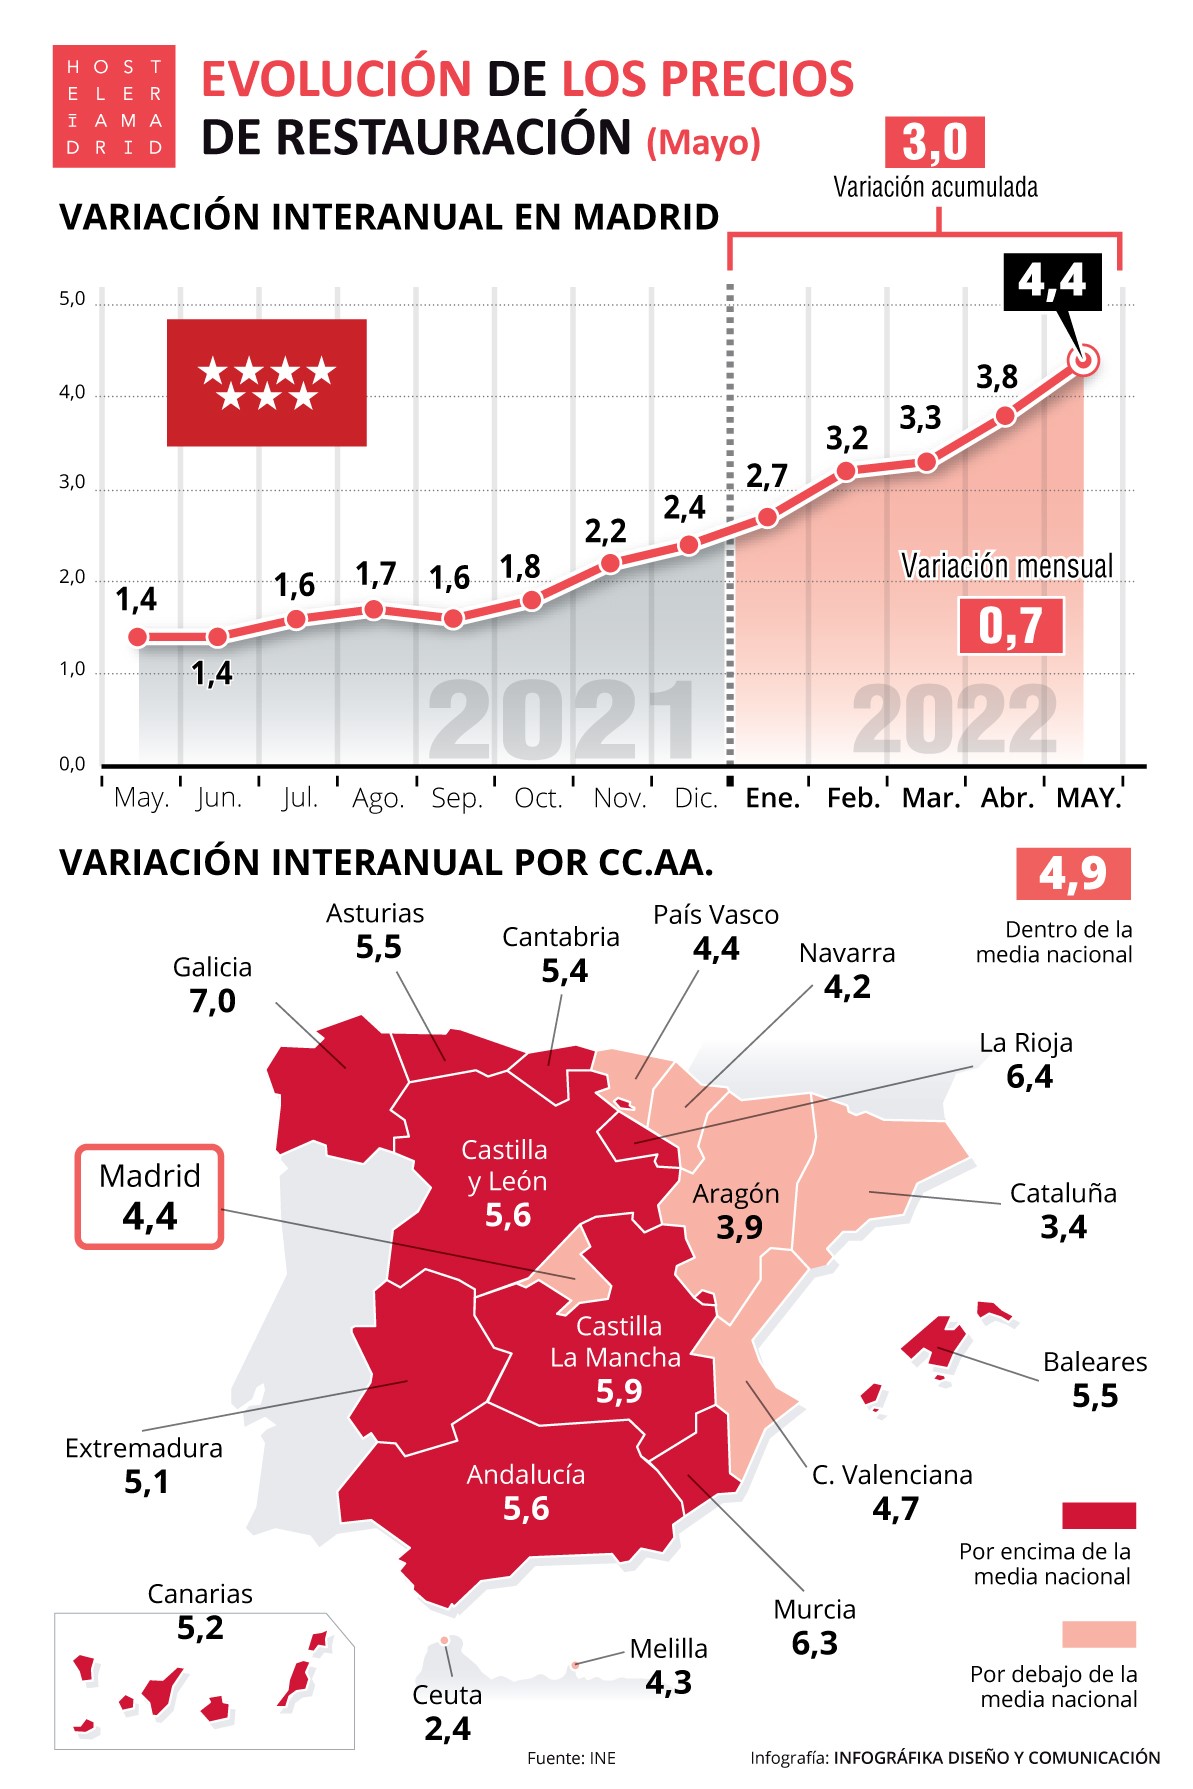 El IPC de la restauración de Madrid subió 4,4% con respecto a mayo de 2021 y se mantiene por debajo de la media nacional de 4,9% - La Viña